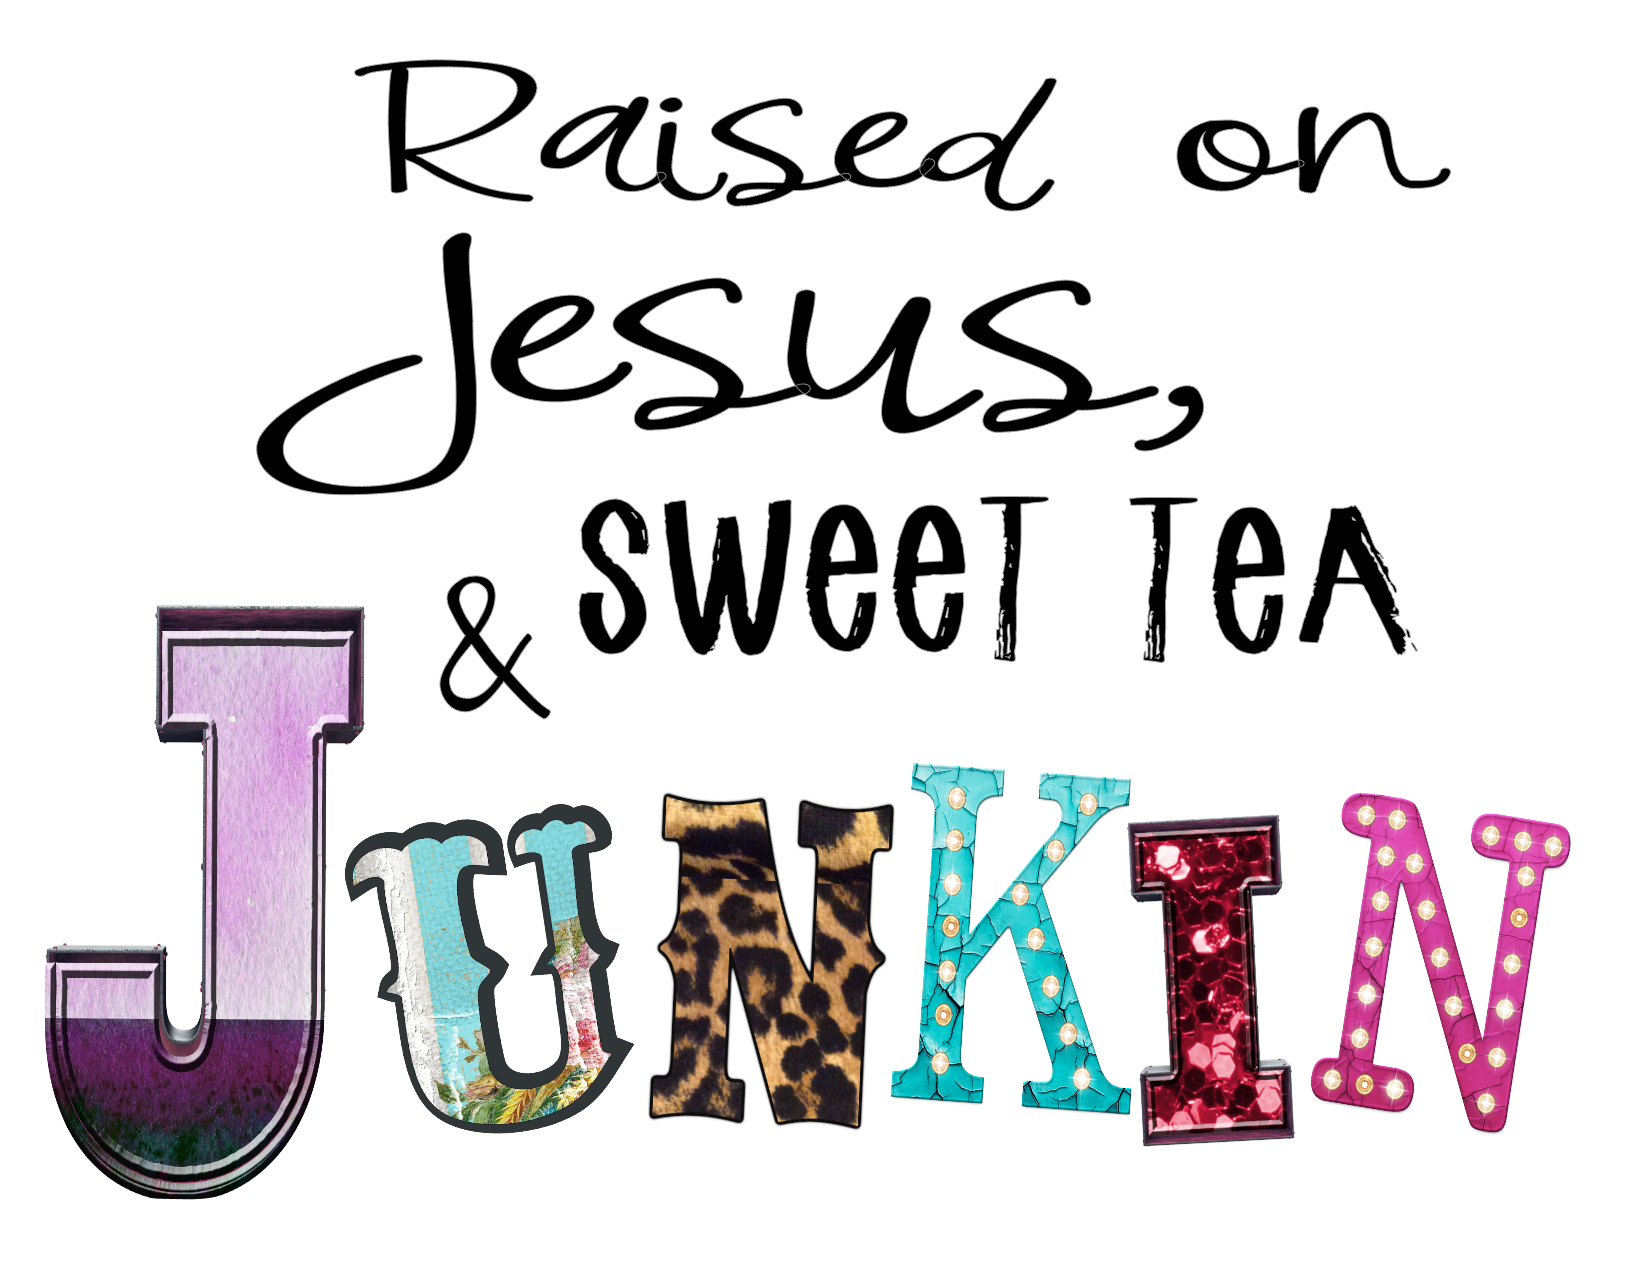 #88 Raised on Jesus, sweet tea & Junkin